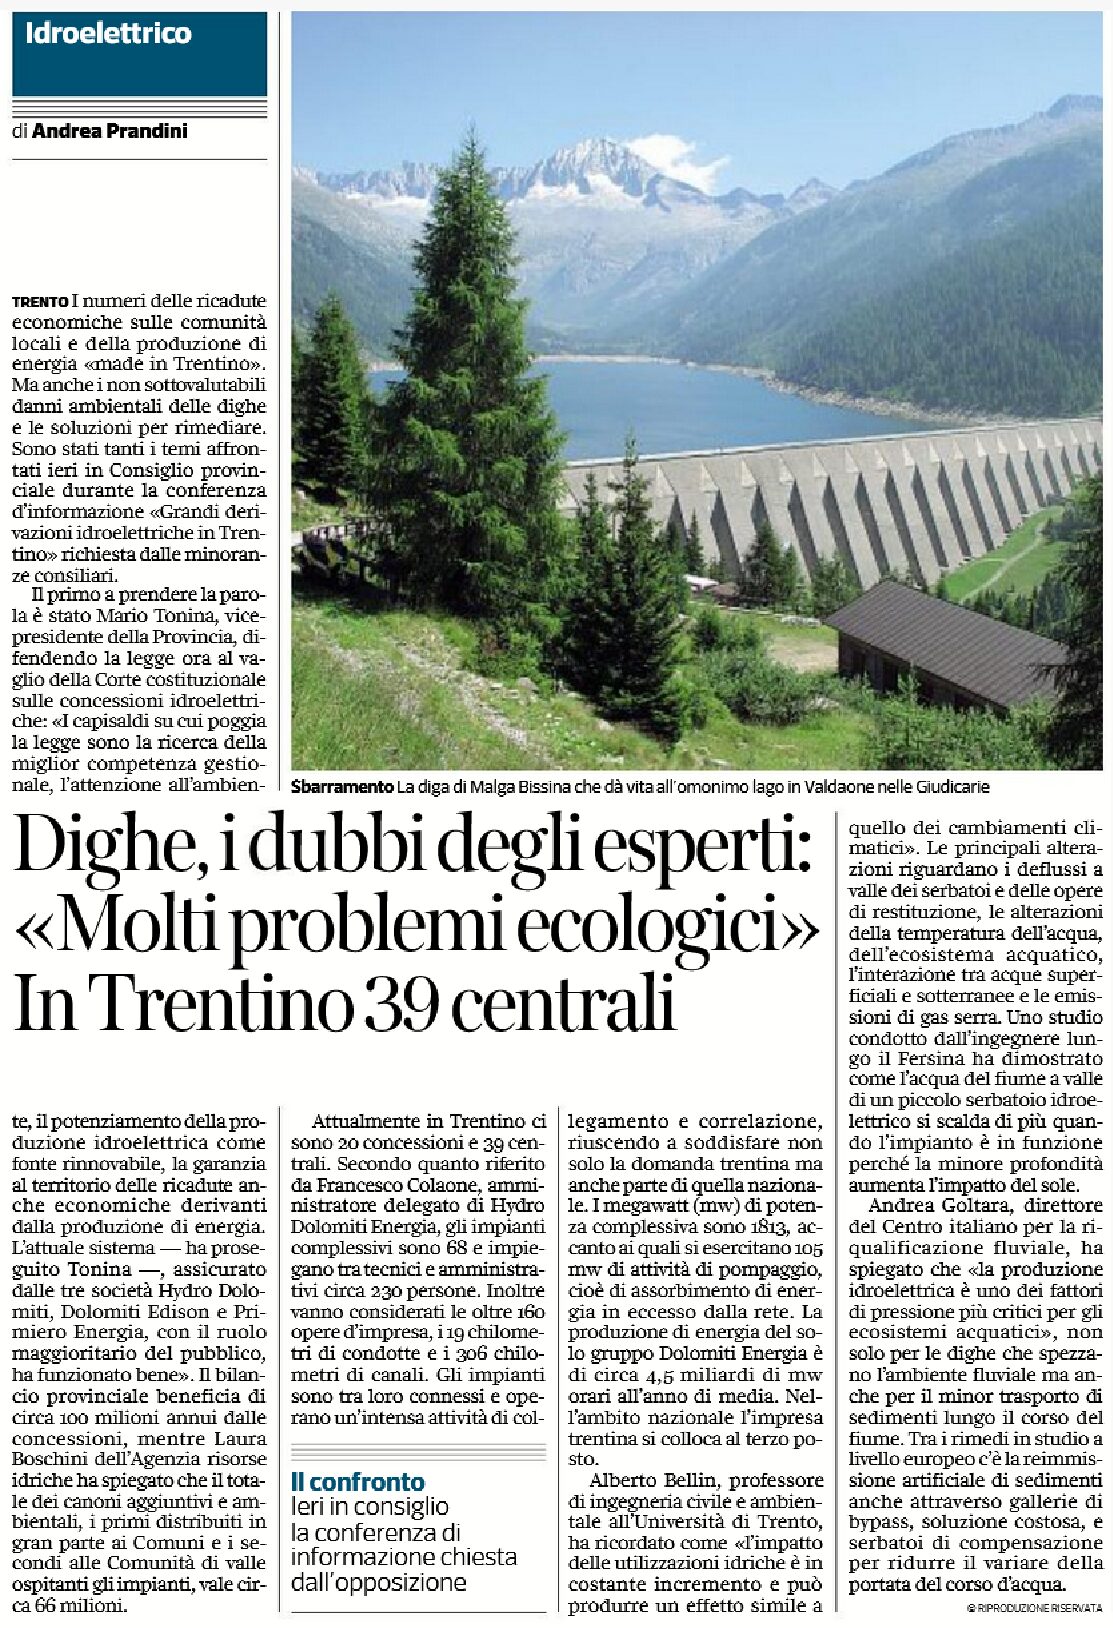 Idroelettrico: dighe, i dubbi degli esperti “molti problemi ecologici”. In Trentino 39 centrali